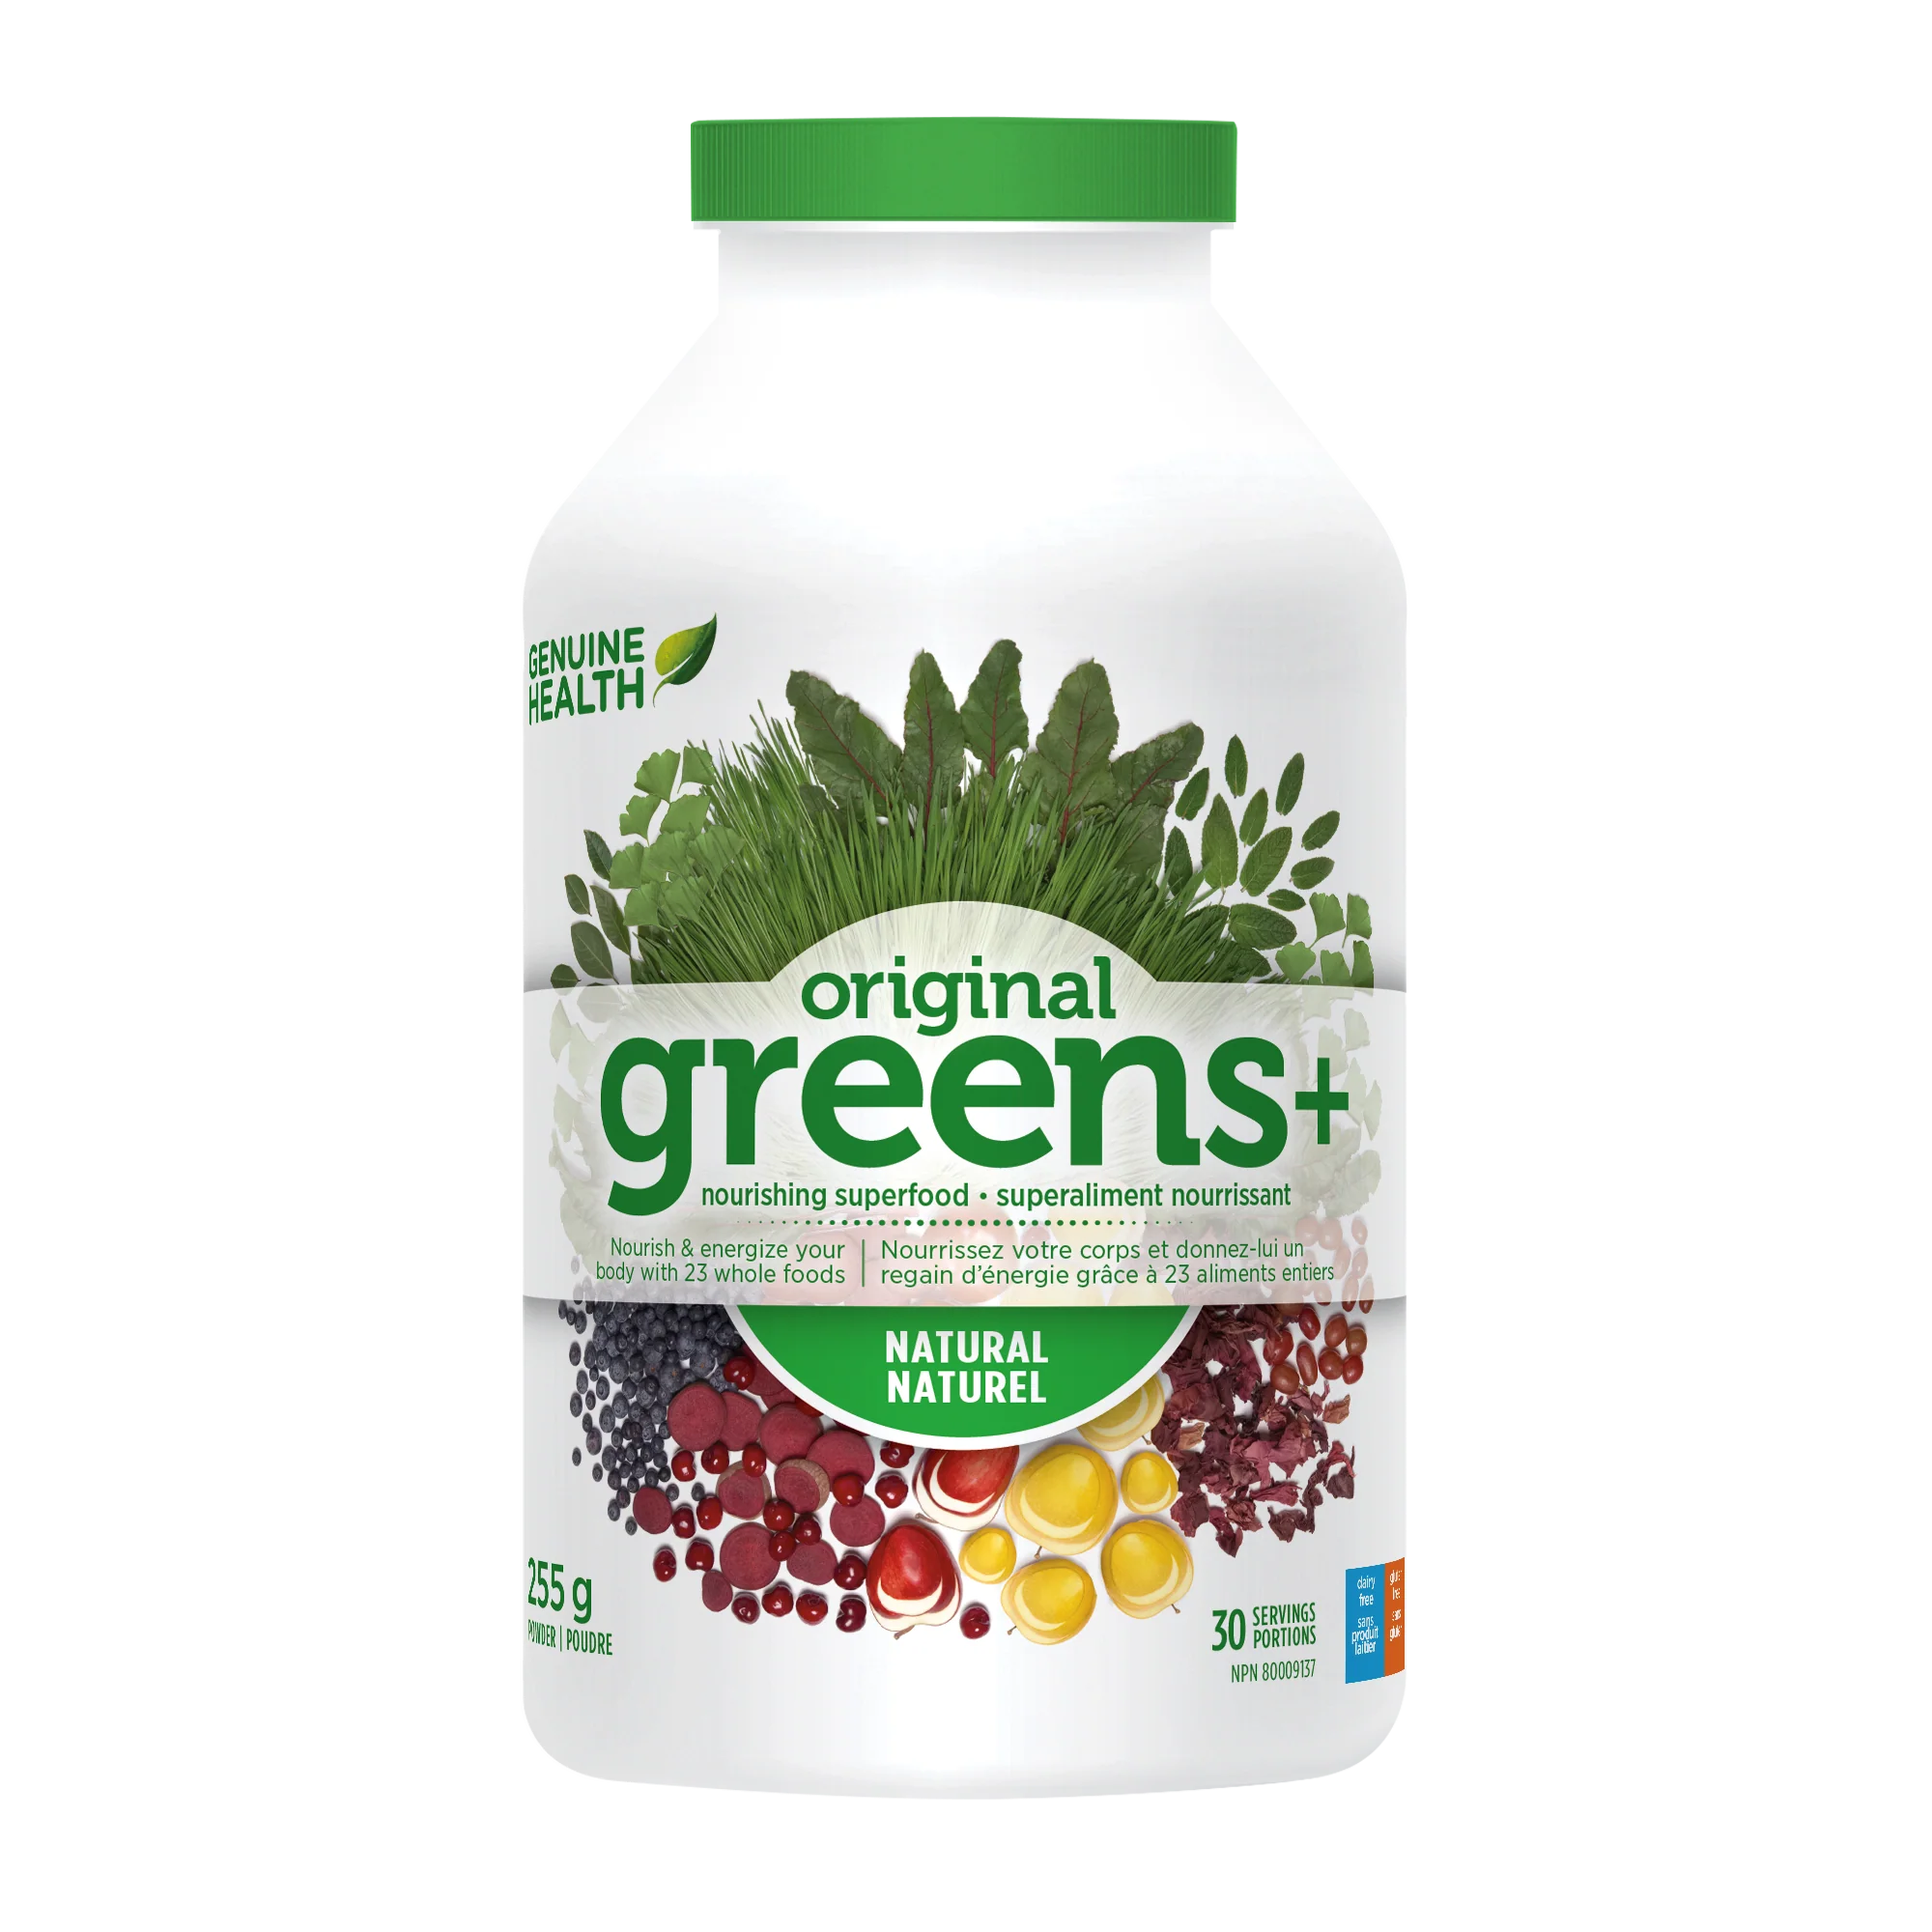 Genuine health - greens+  original - 255g